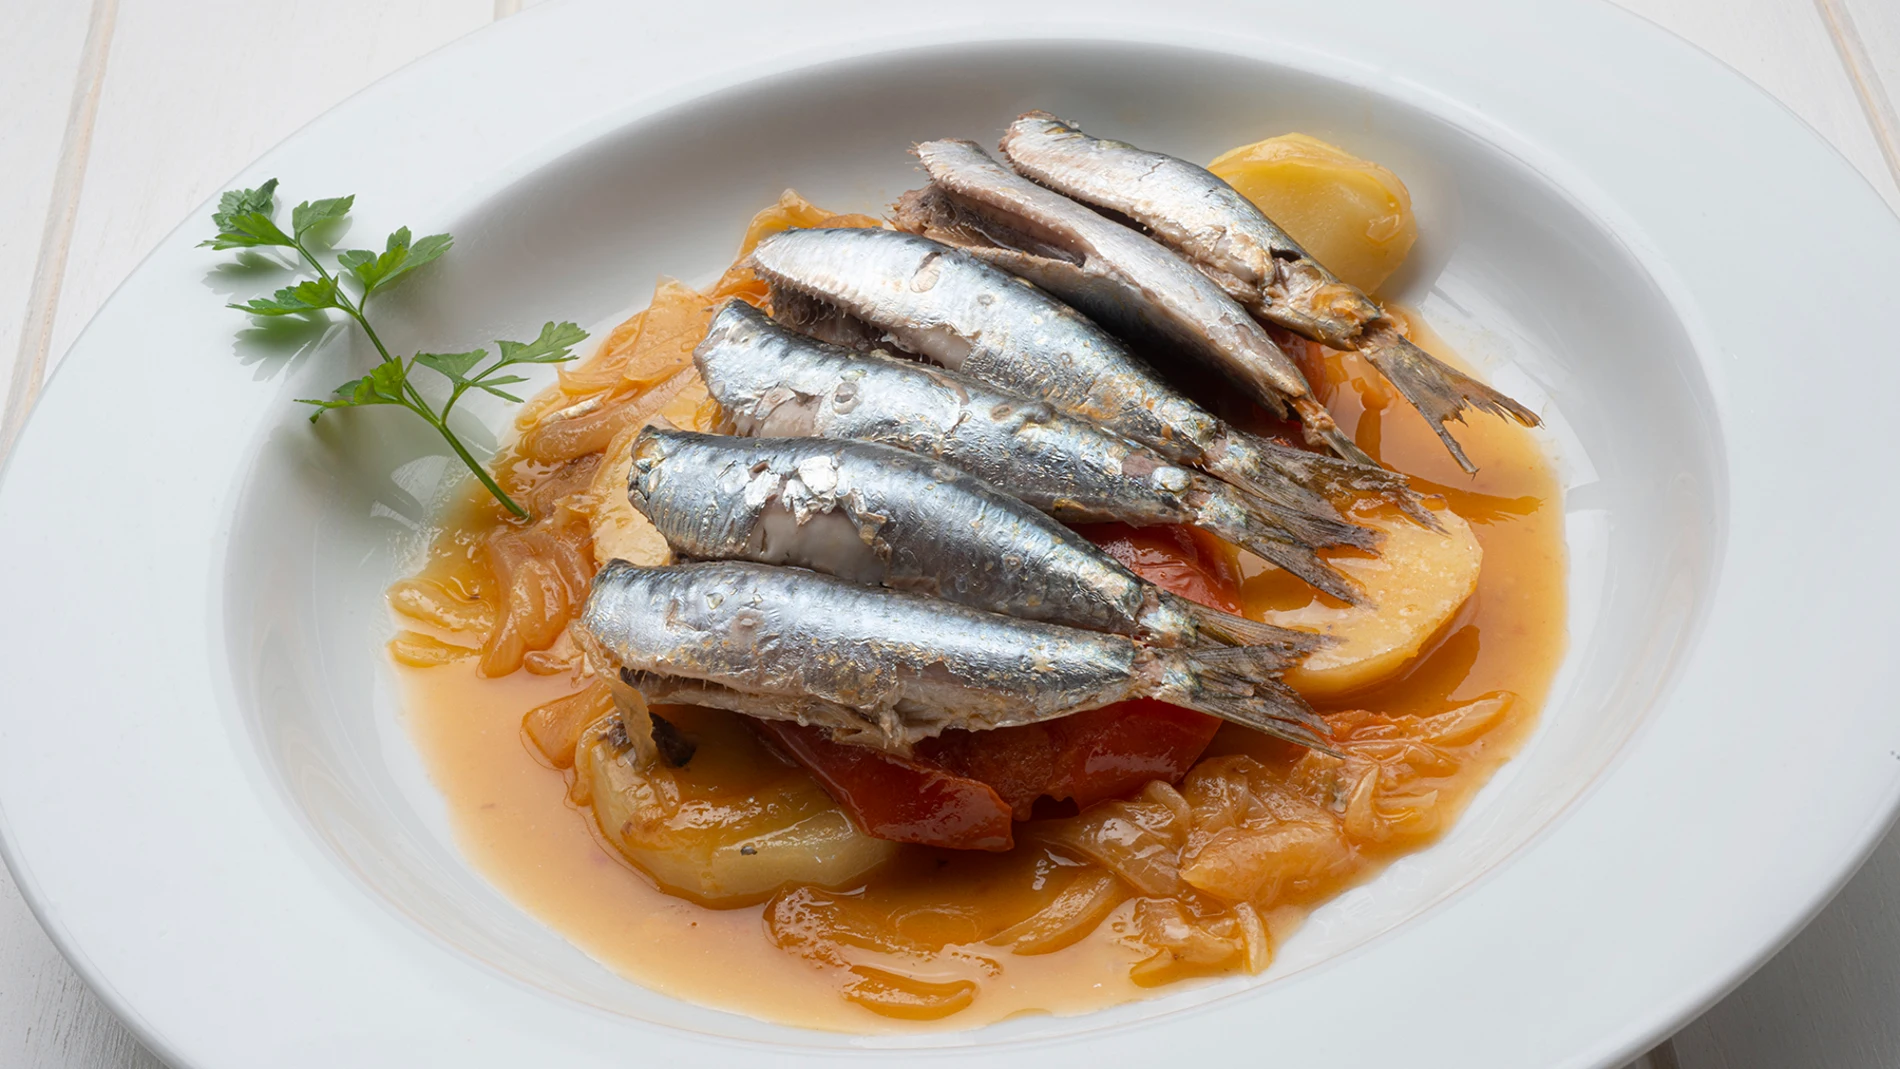 Receta de sardinas en cazuela, de Karlos Arguiñano: "Manjar de dioses"